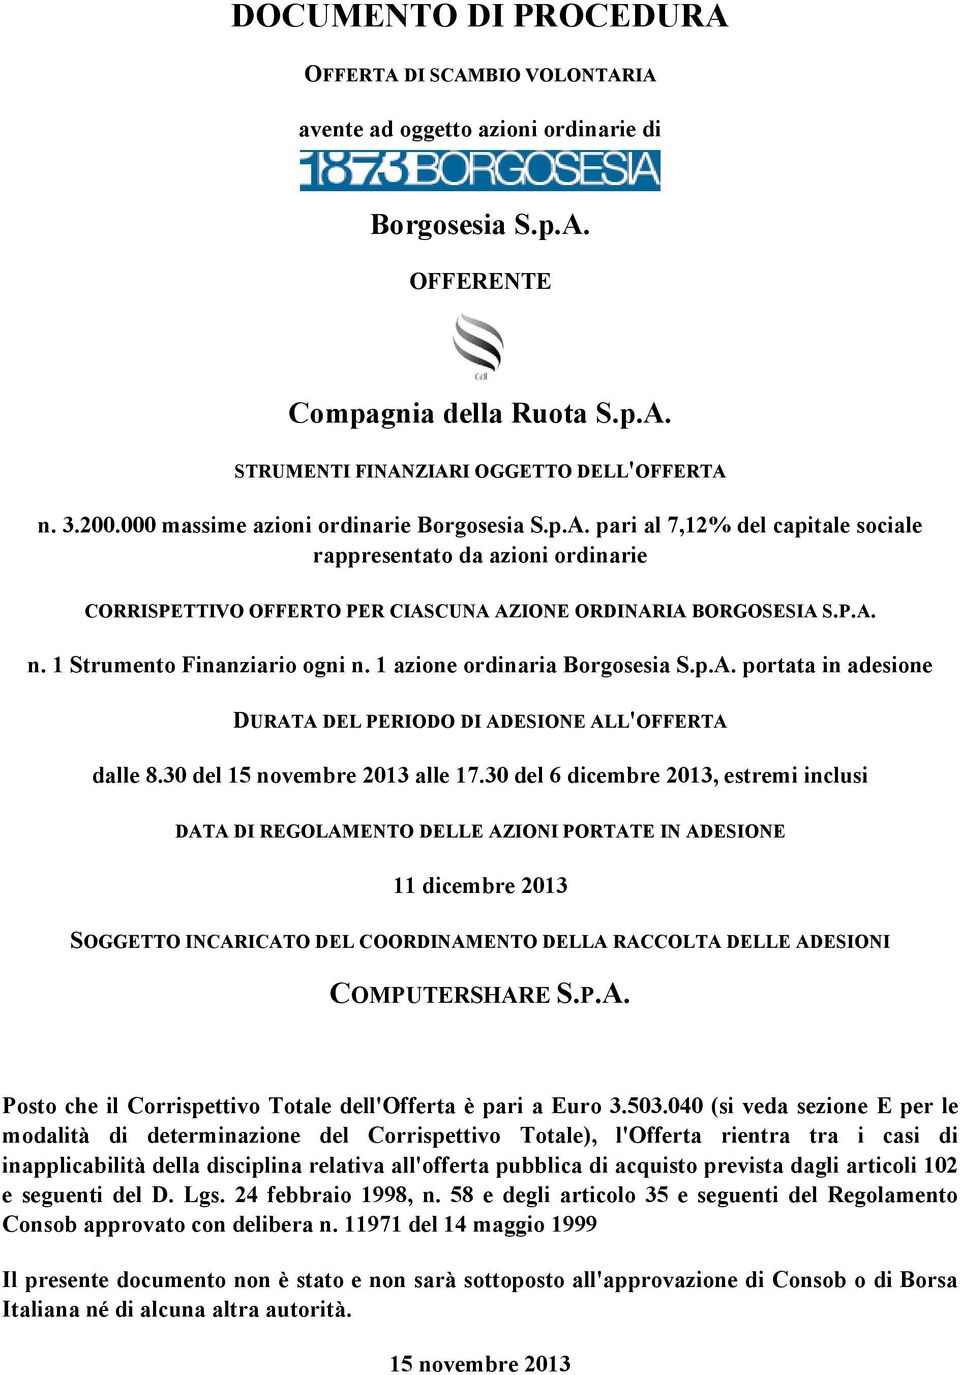 1 Strumento Finanziario ogni n. 1 azione ordinaria Borgosesia S.p.A. portata in adesione DURATA DEL PERIODO DI ADESIONE ALL'OFFERTA dalle 8.30 del 15 novembre 2013 alle 17.